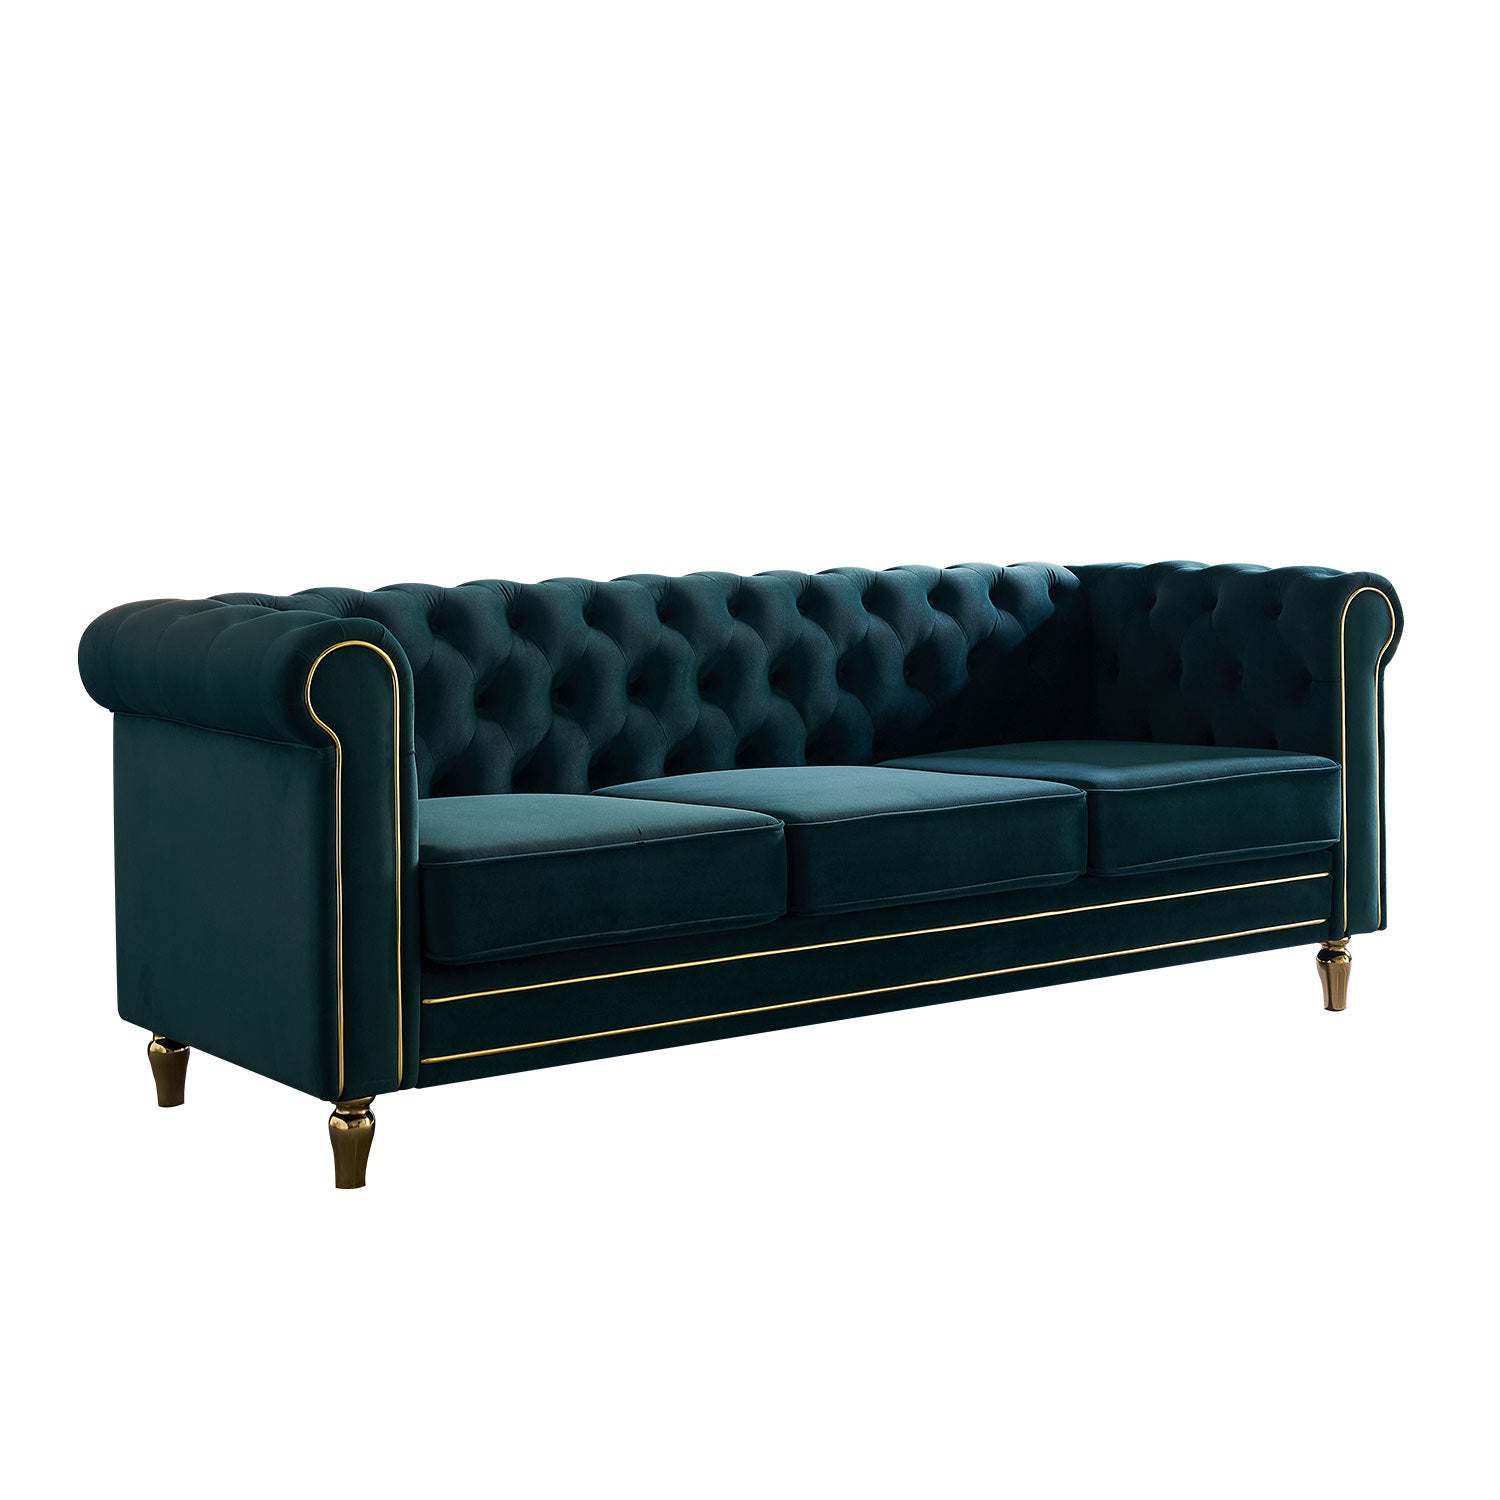 🆓🚛 84.65" Chesterfield Velvet Sofa for Living Room, Green